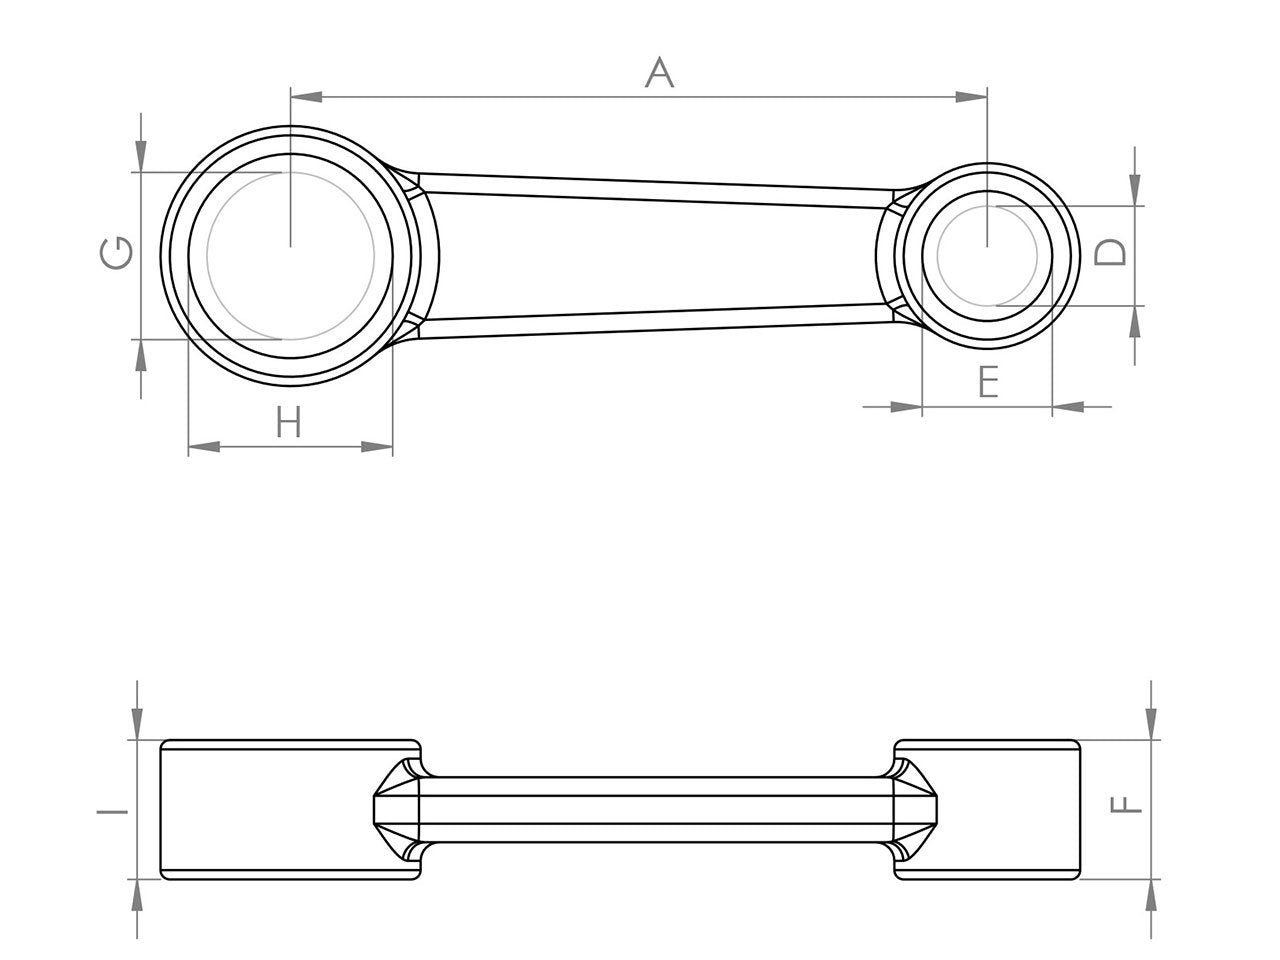 Zeichnung Barikit Pleuel für einen Derbi Hunter Motor mit Bemaßung.